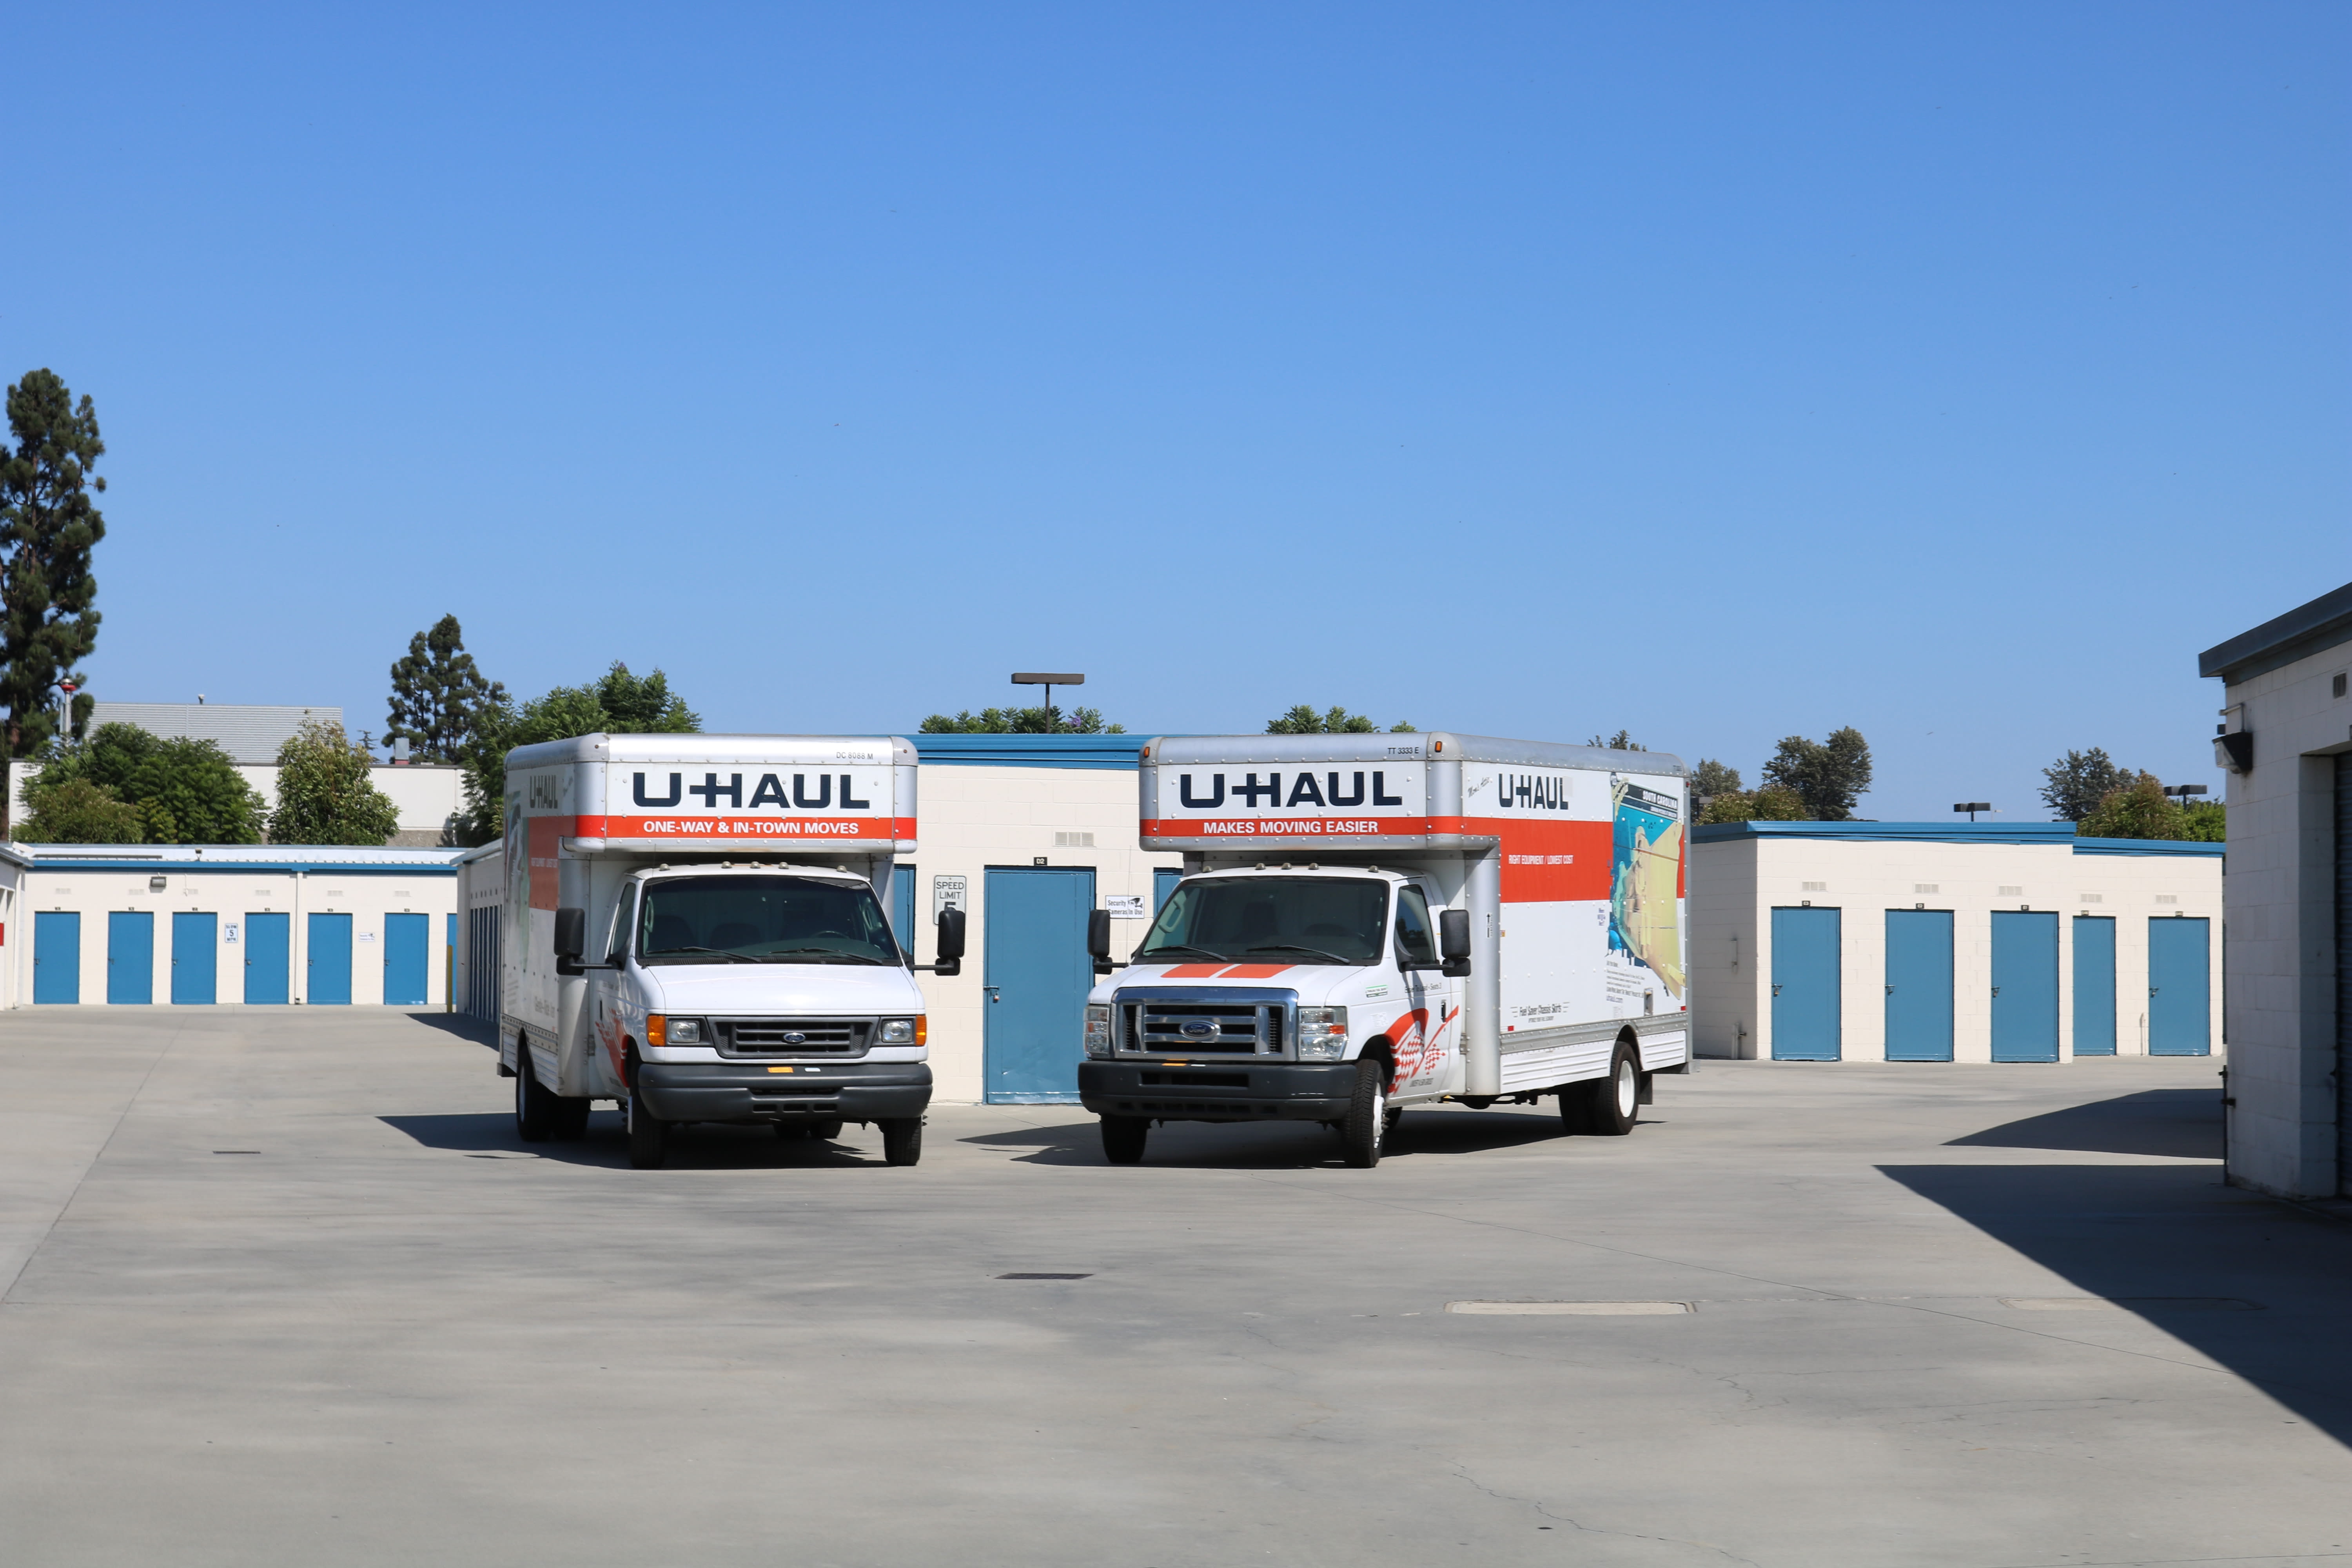 U-Haul trucks and tiered storage sizes at Golden State Storage - Gardena in Gardena, California